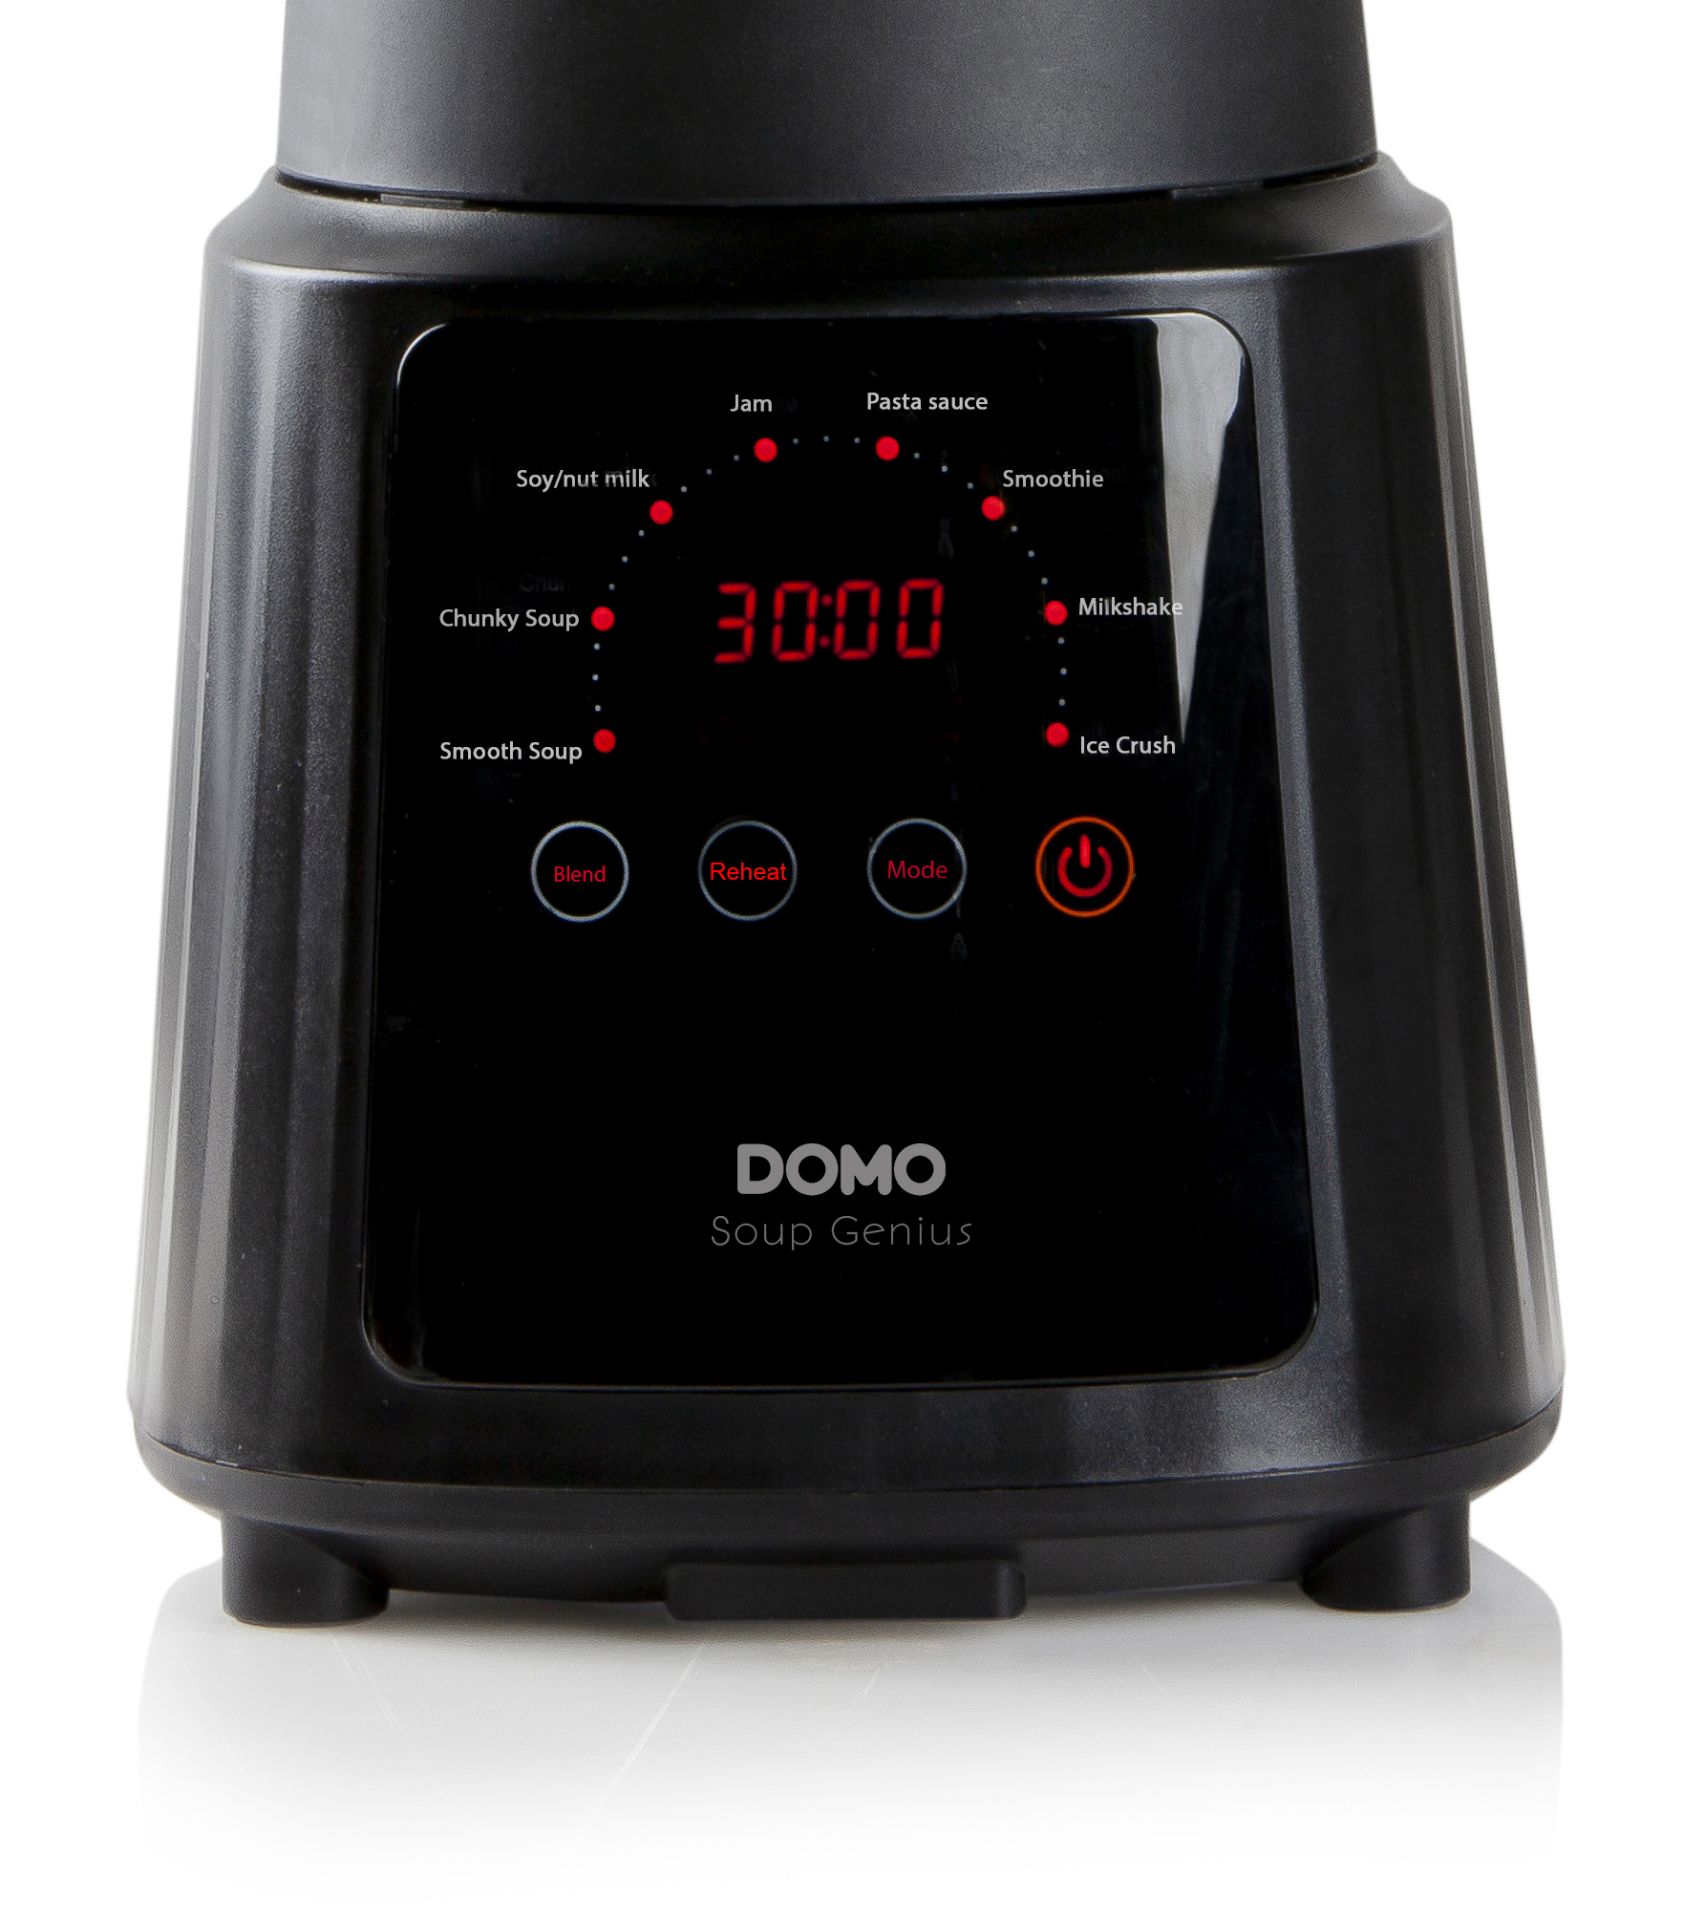 3 x DOMO Digital Soup/Blender 1.2L Smoothy Maker RRP £ 140 each - Image 6 of 8